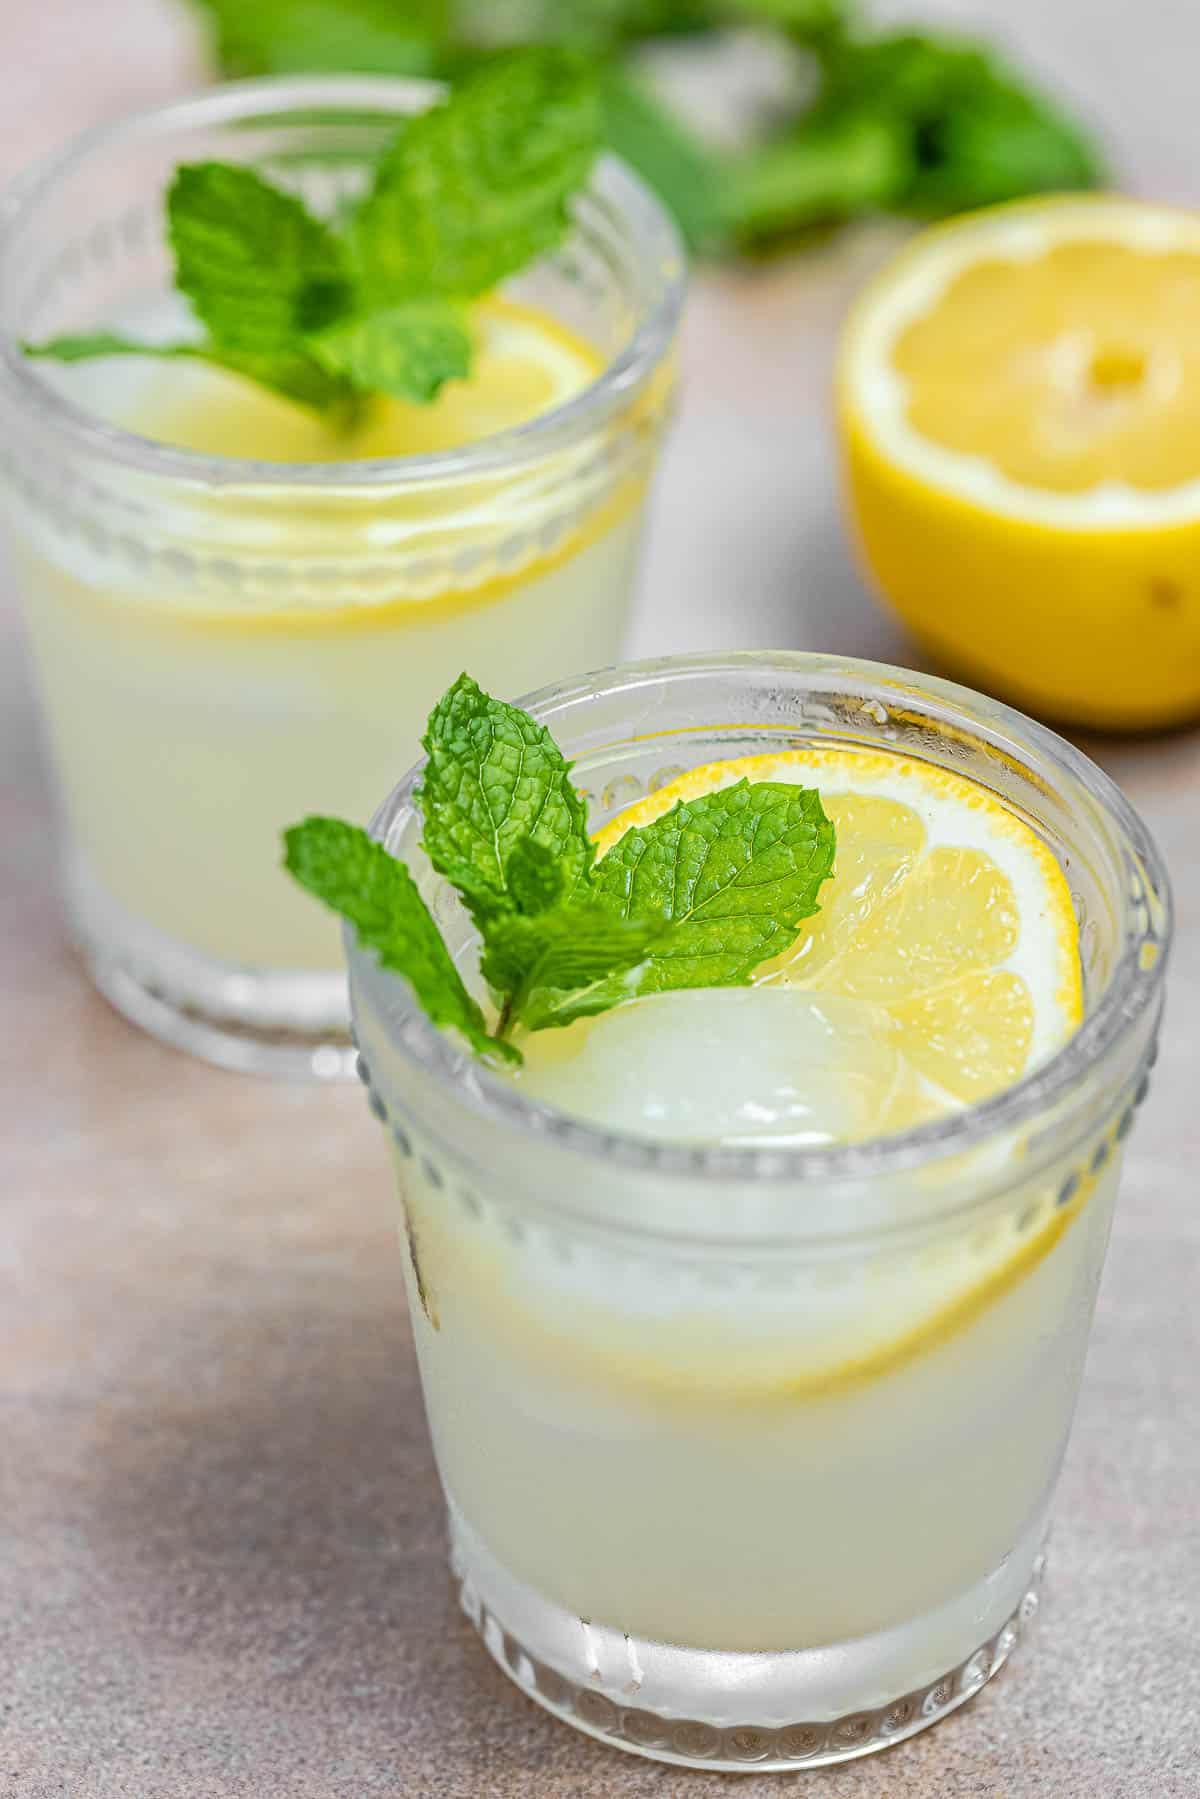 ouzo drink (similar to ouzo lemonade) with lemon slices and fresh mint.